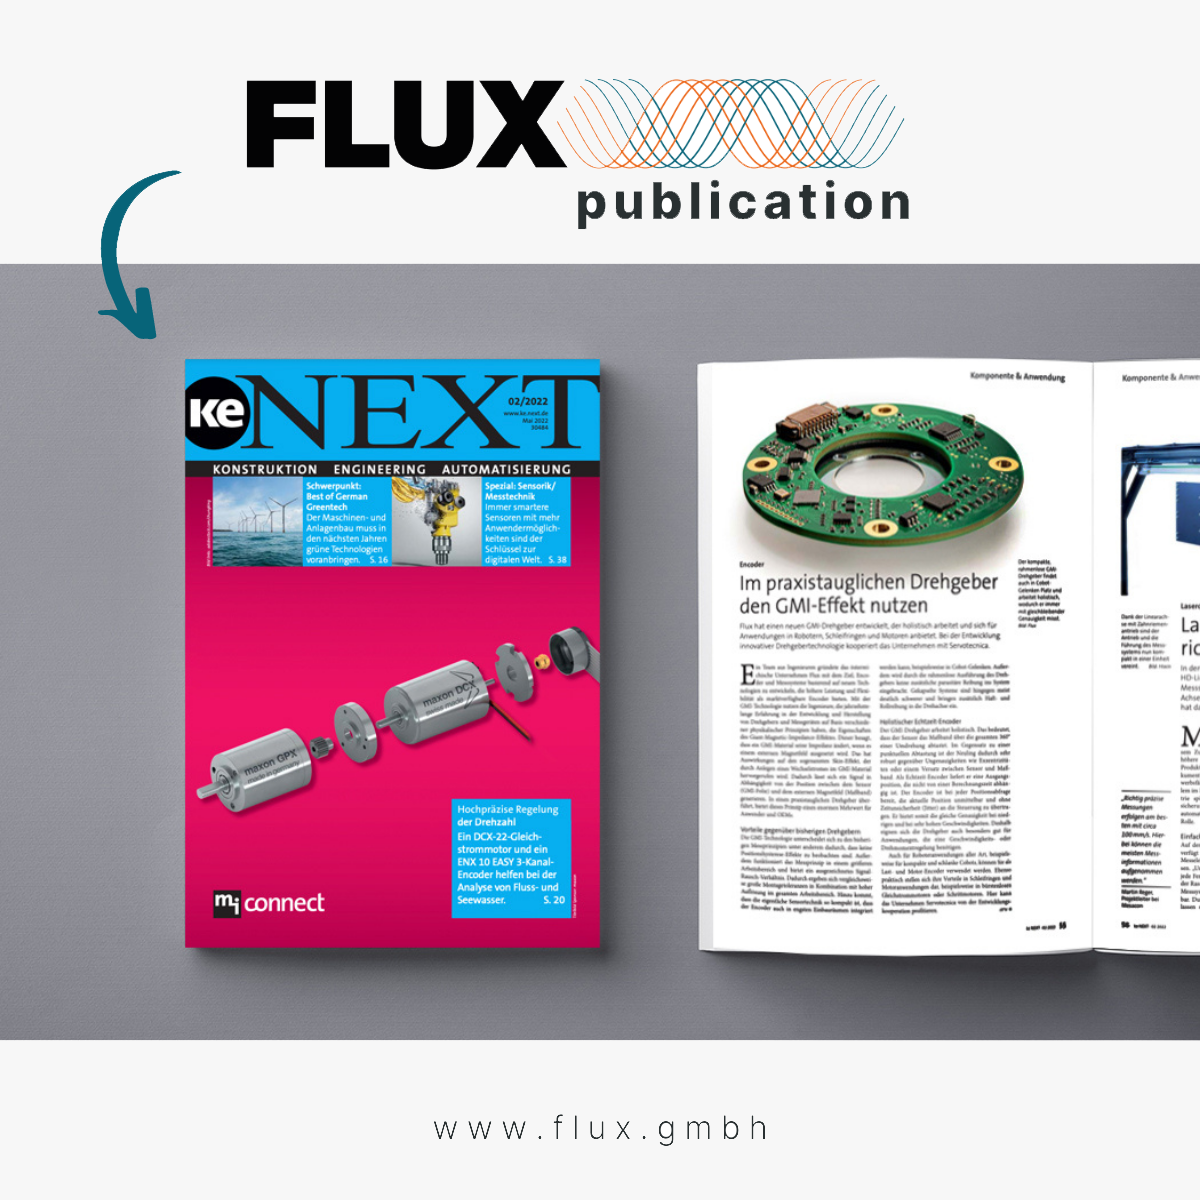 ke NEXT Fachmagazin presenta la tecnologia FLUX GMI